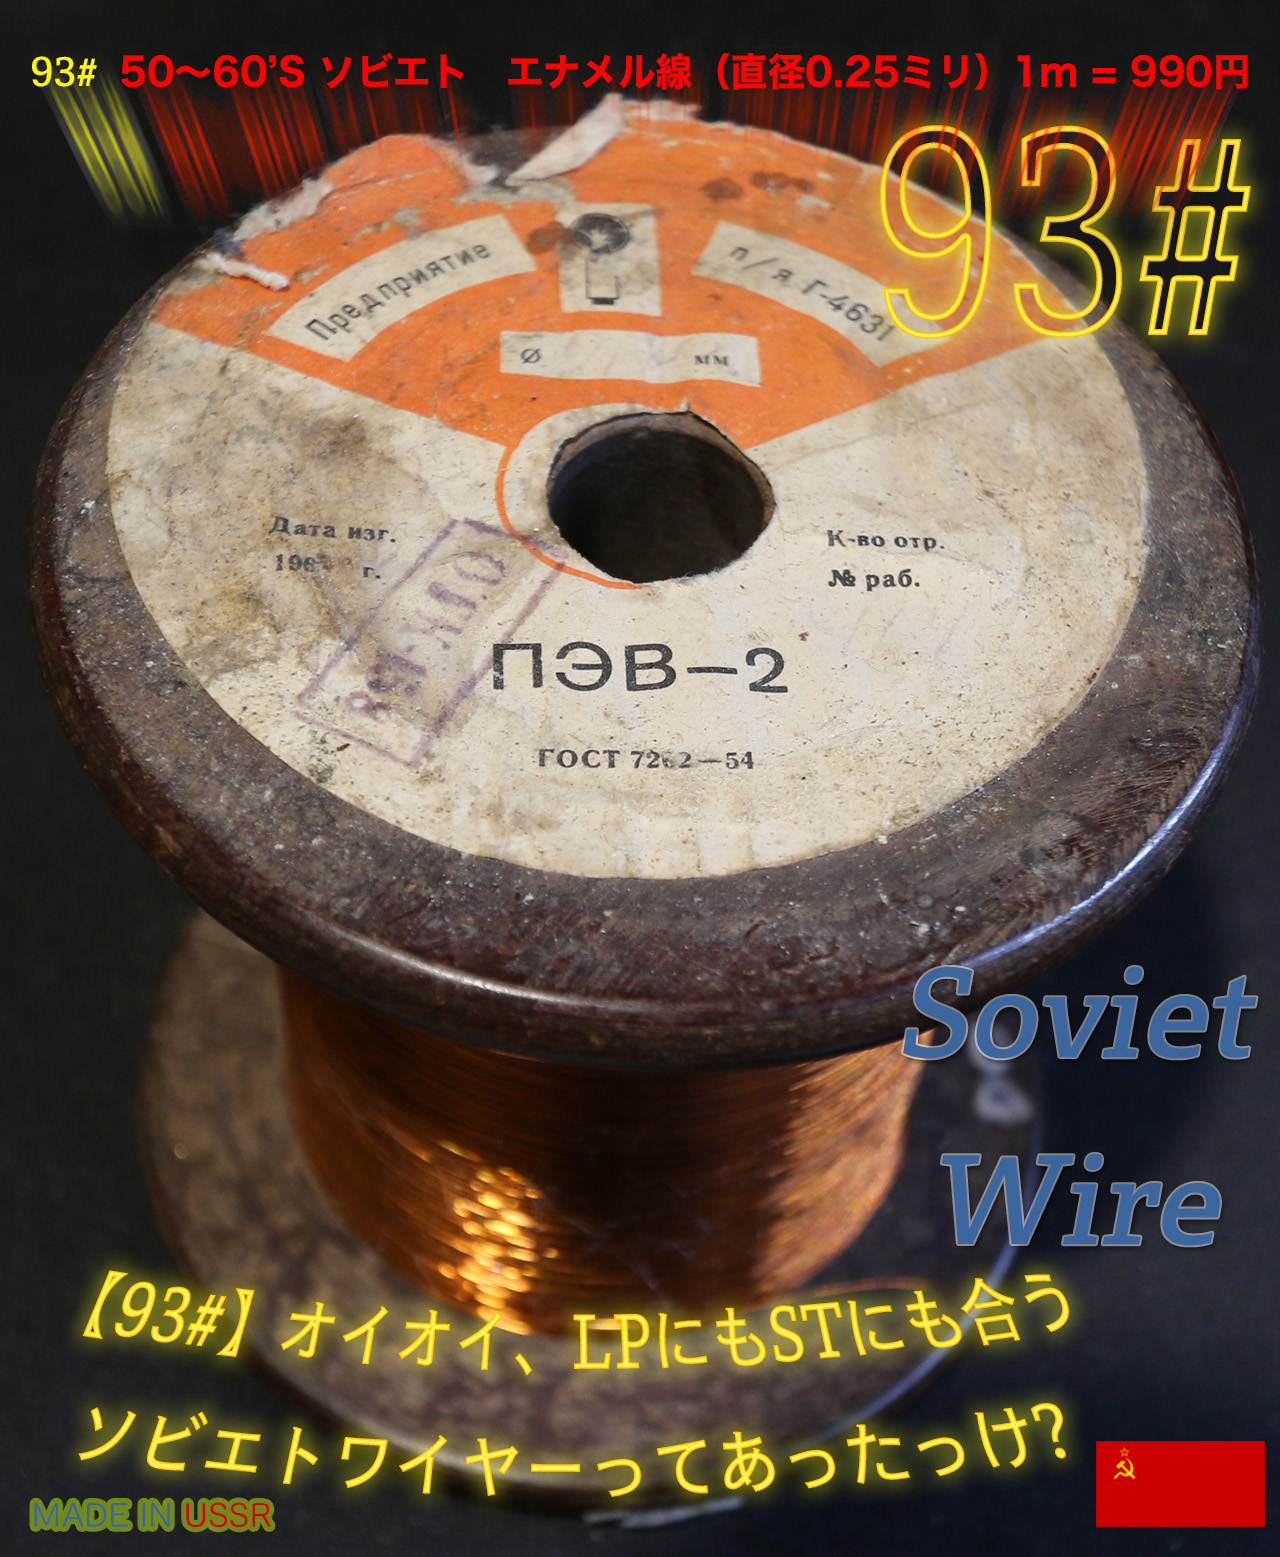 【93#】オイオイ、LPにもSTにも合うソビエトワイヤーってあったっけ? 　1m  990円画像